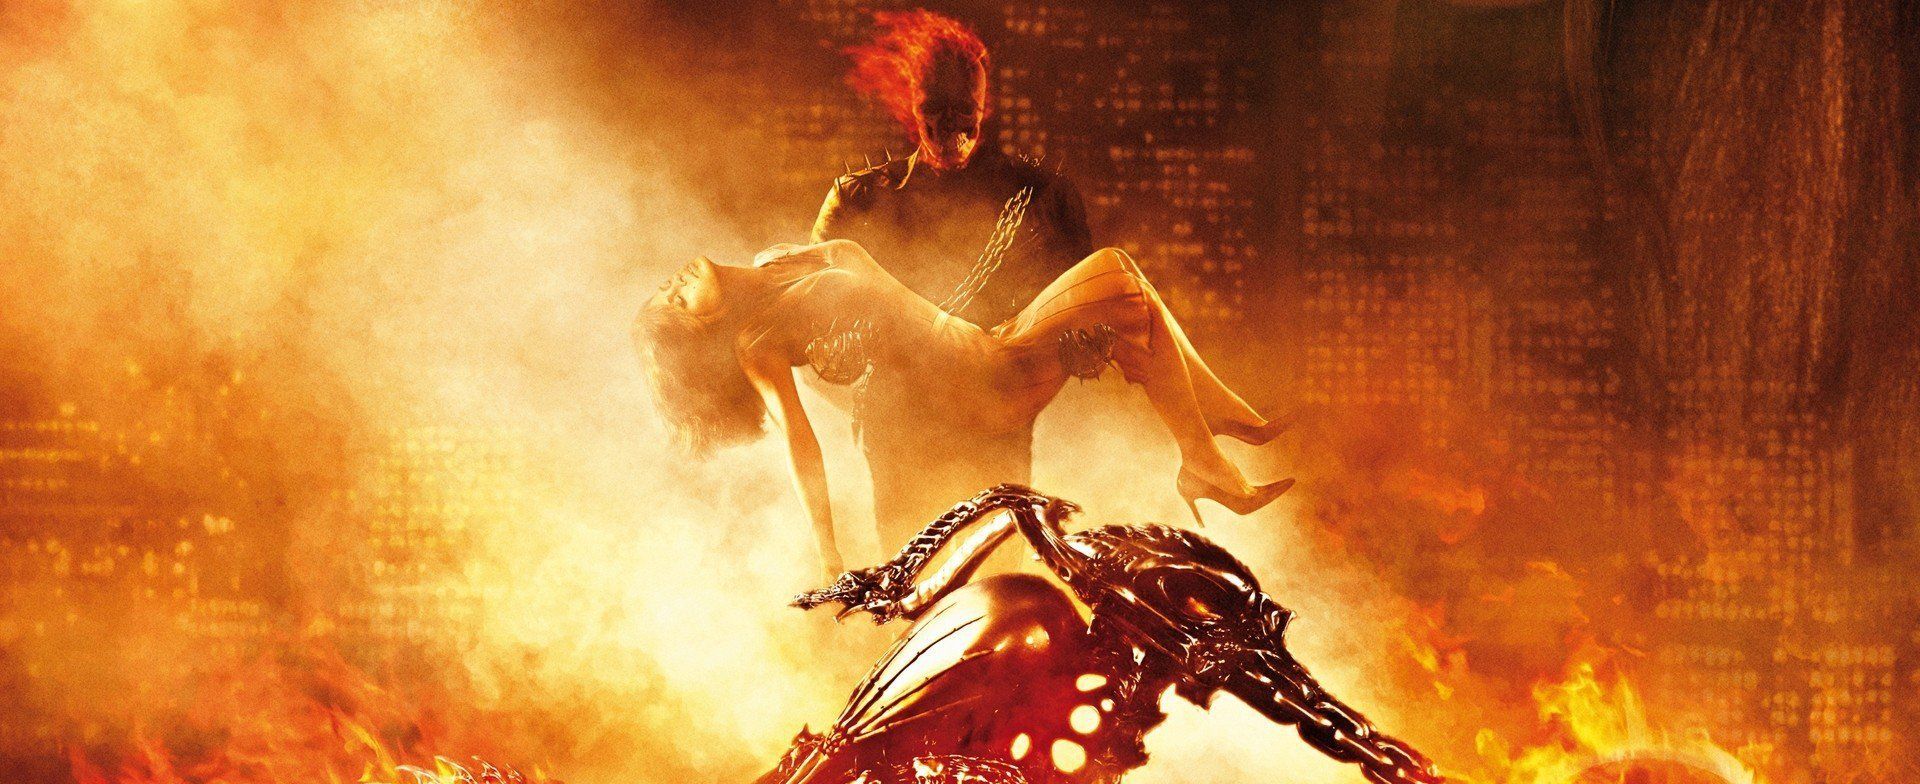 Ghost Rider (2007) streaming VF1920 x 784